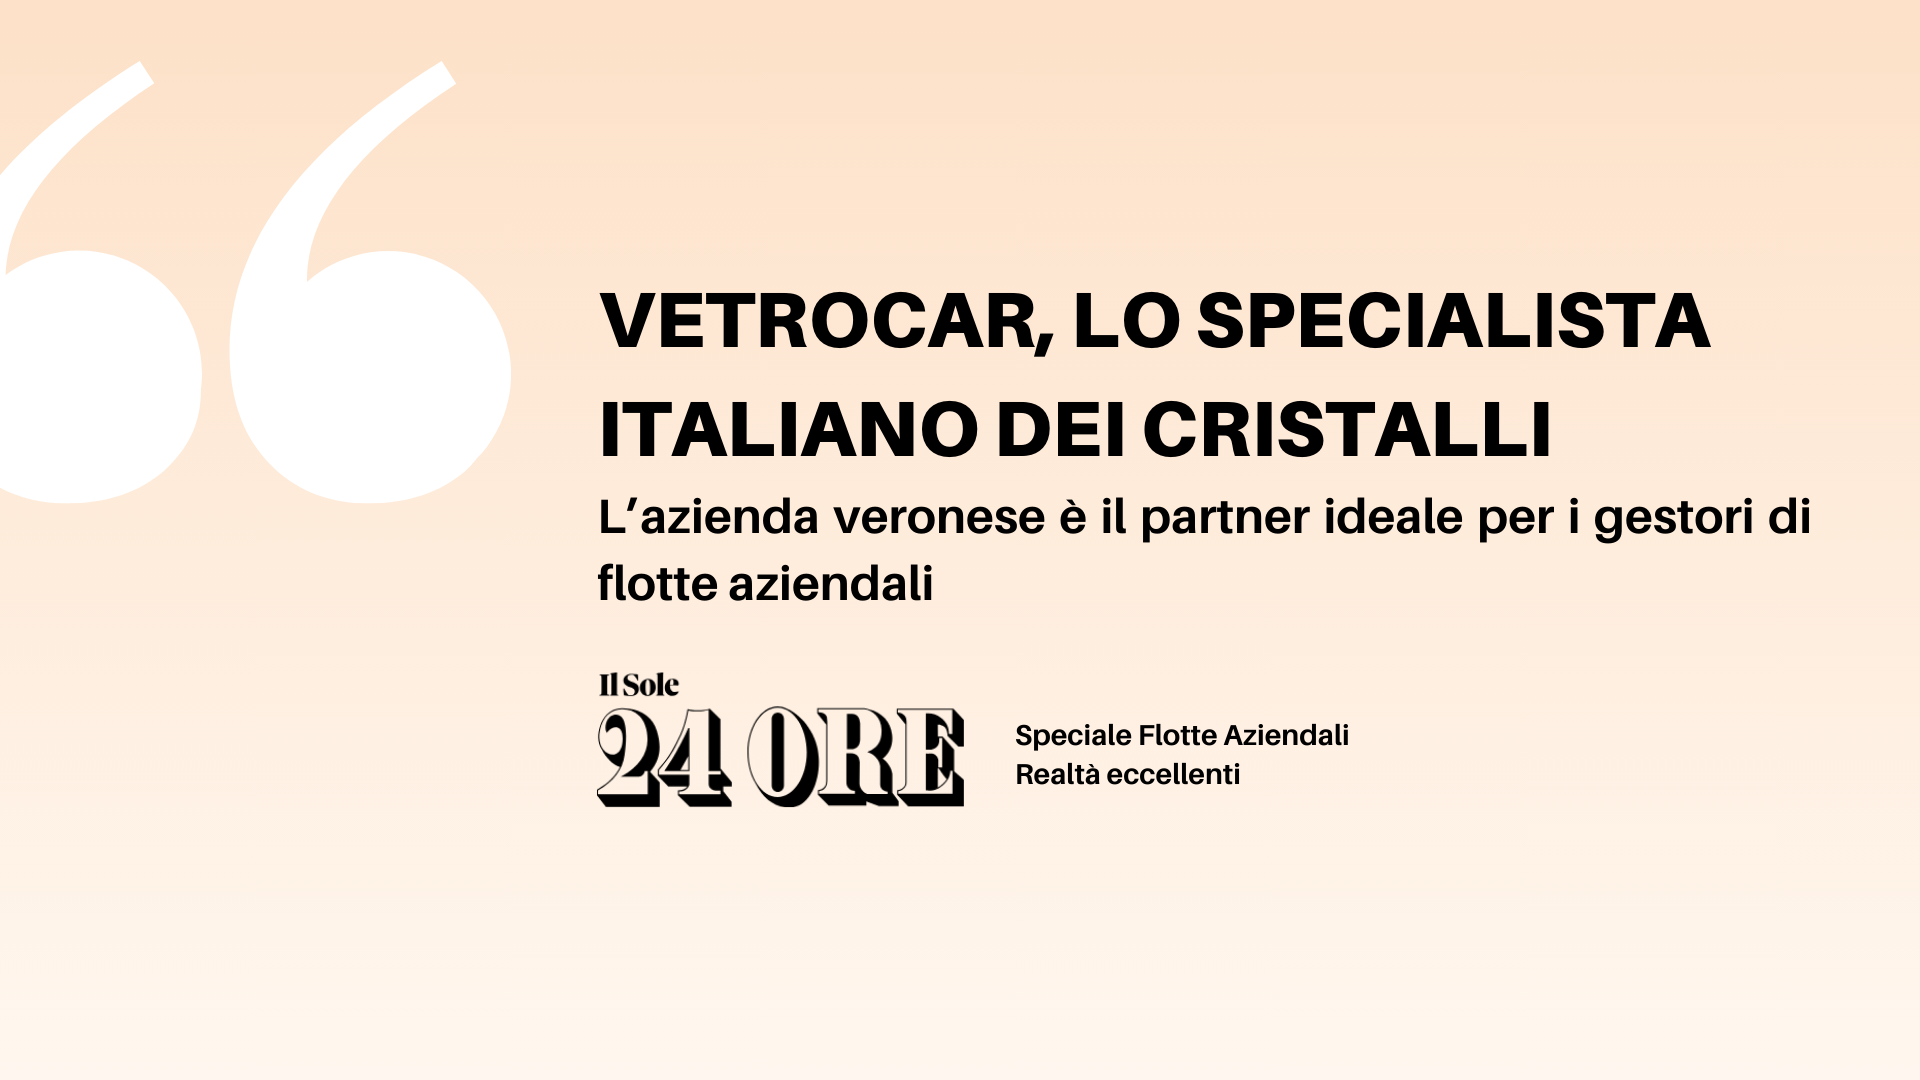 VetroCar, lo specialista italiano dei cristalli